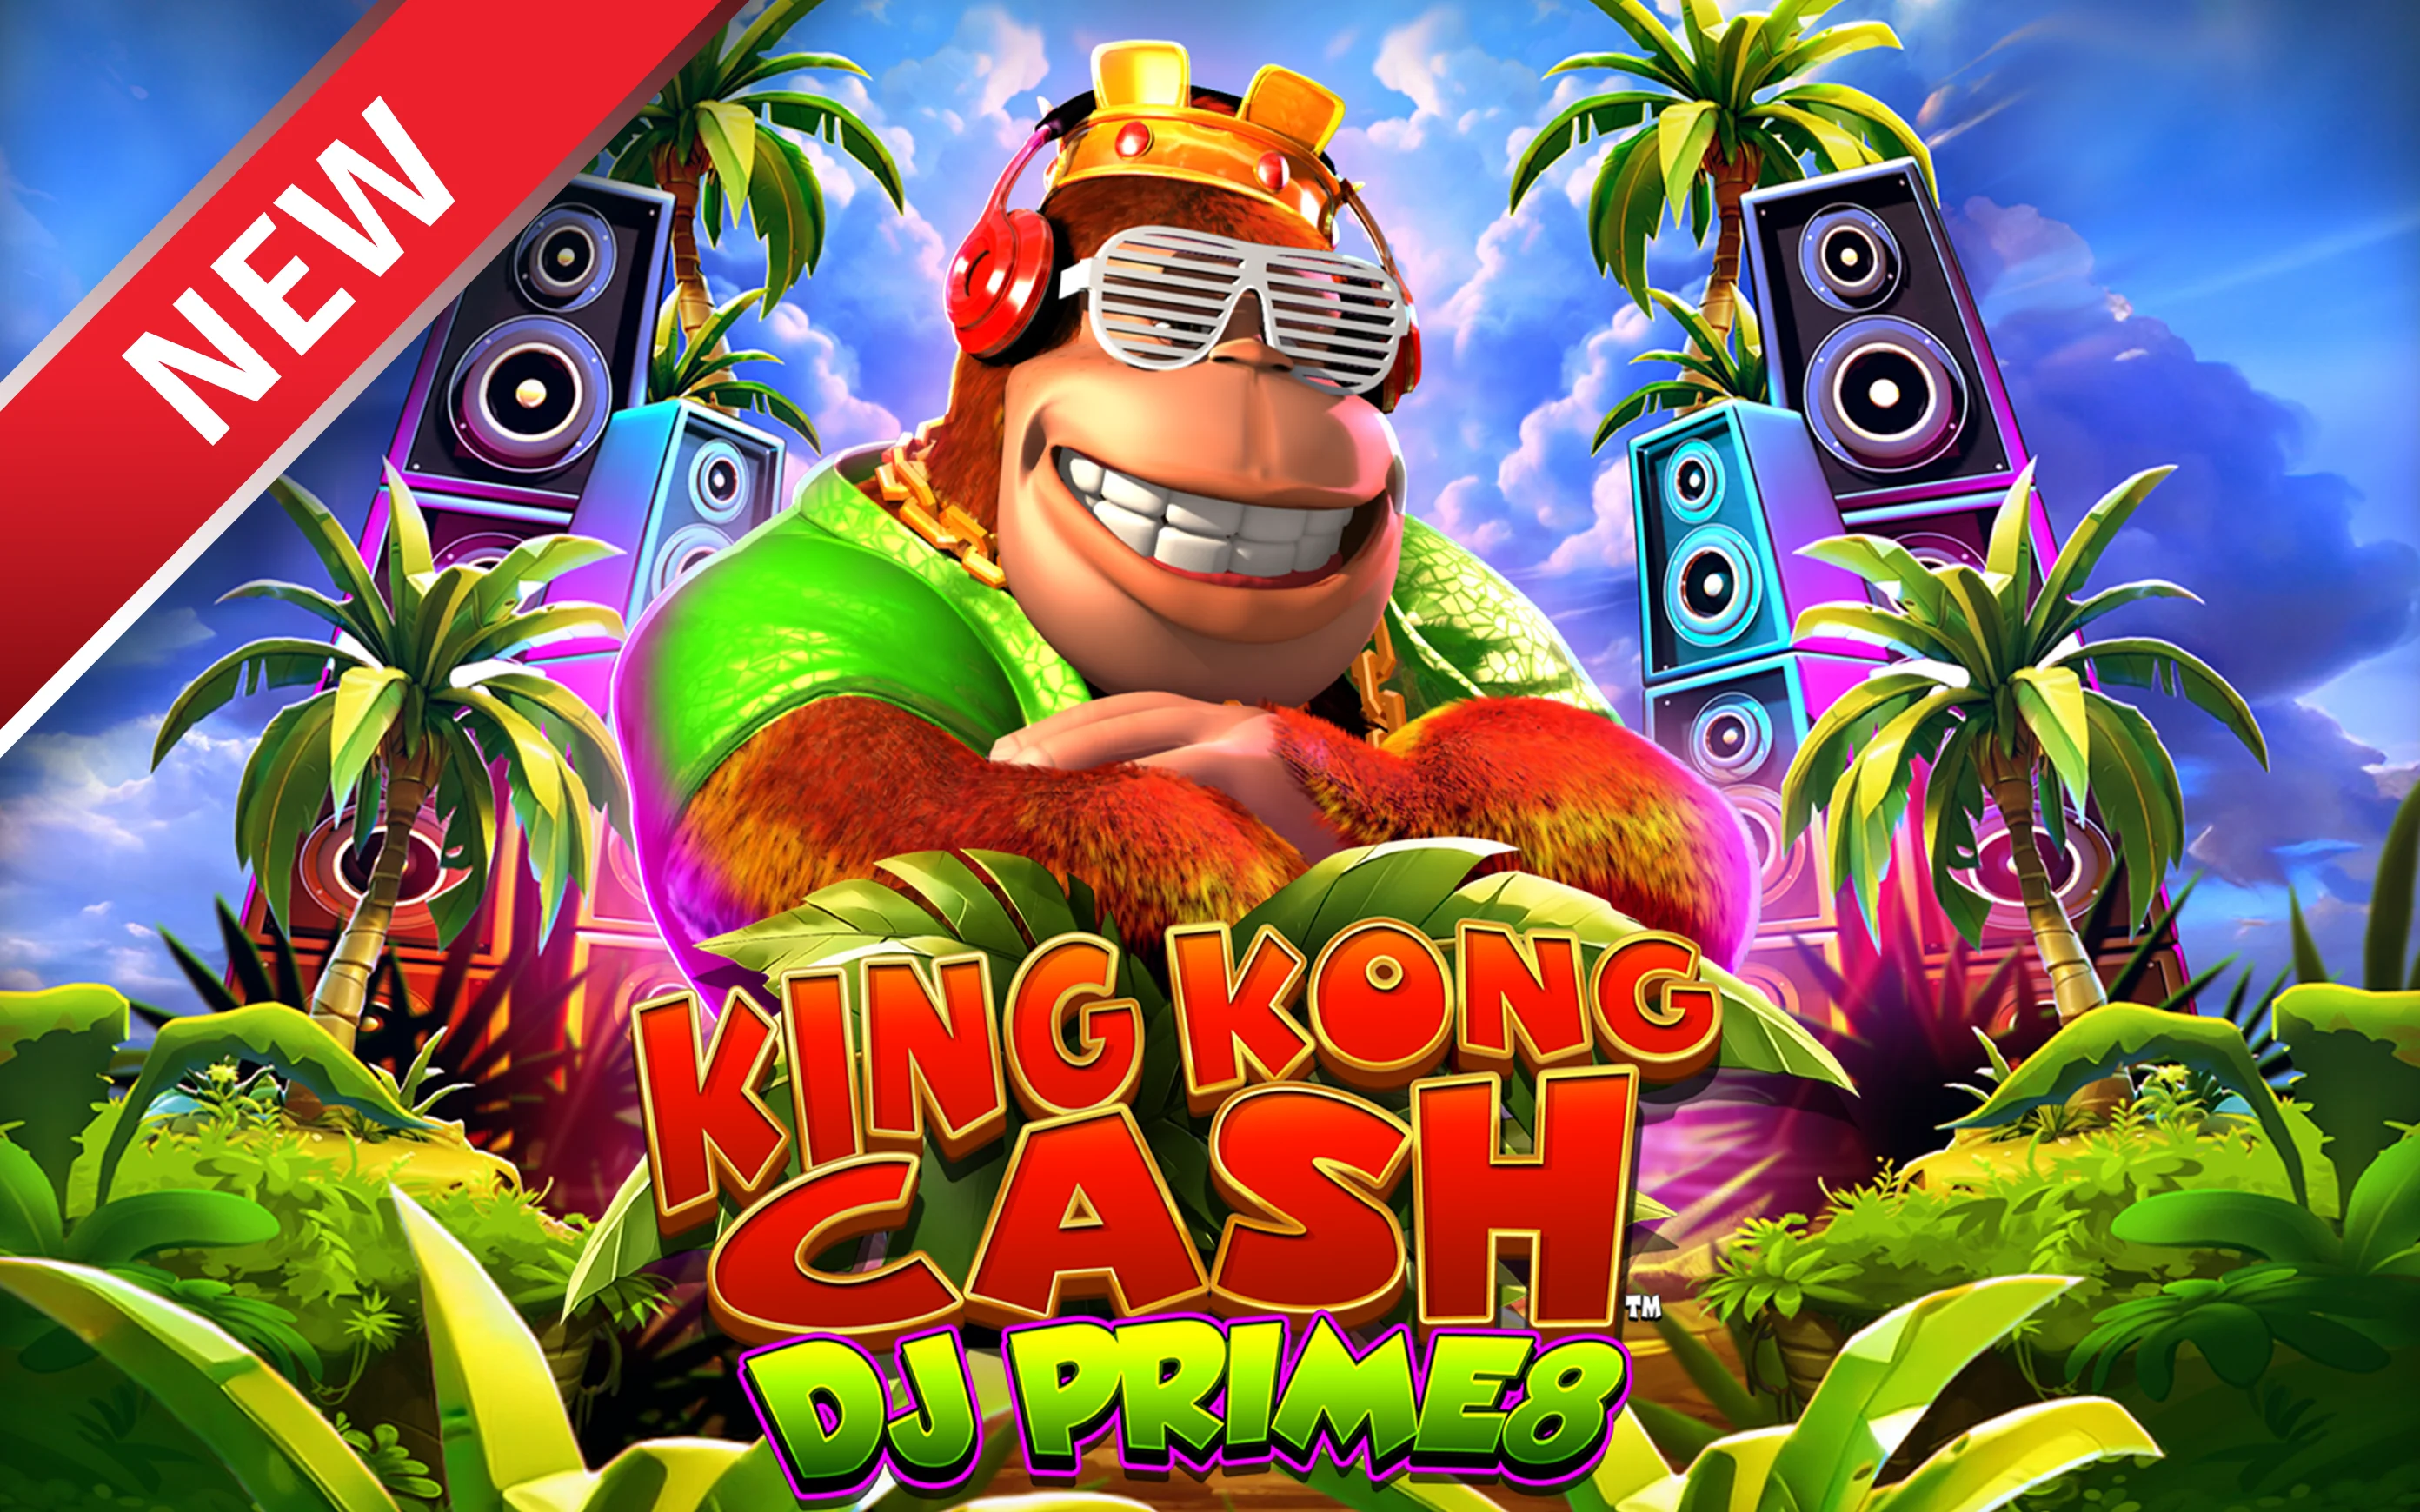 Juega a King Kong Cash DJ Prime8 en el casino en línea de Starcasino.be